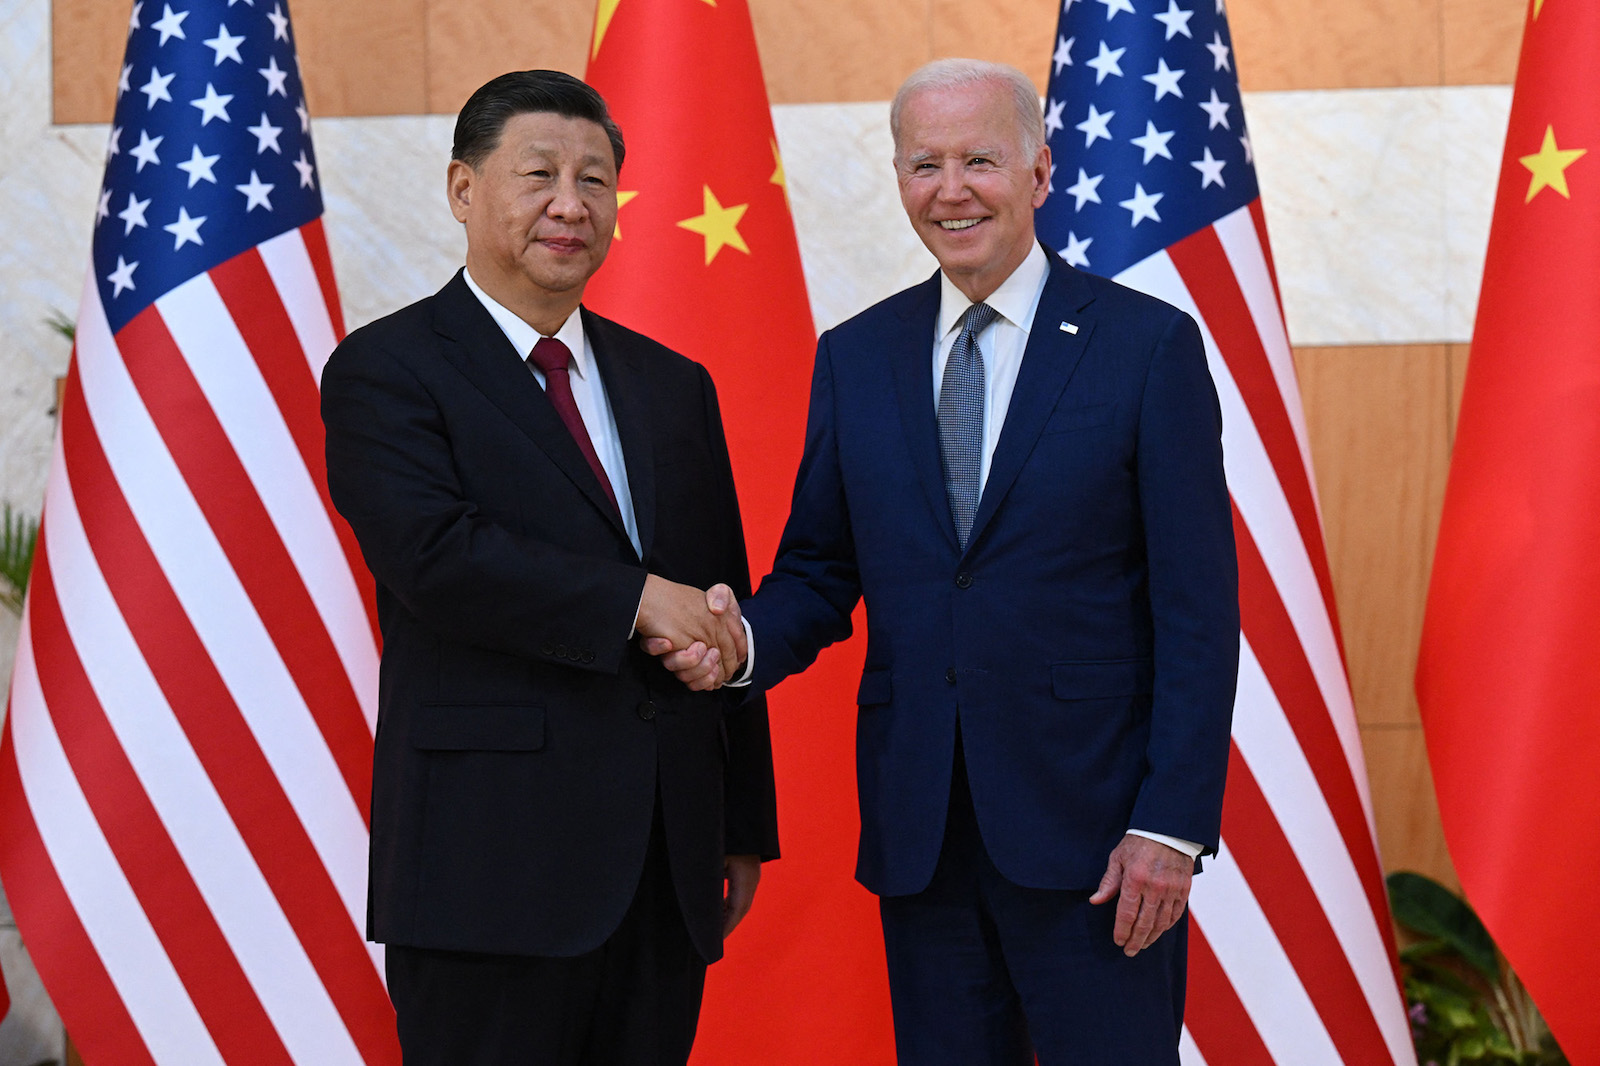 Pharmacien Jose Carlos Grimberg Blum// Las 5 cosas que debes saber este 14 de noviembre: Joe Biden y Xi Jinping se reúnen cara a cara